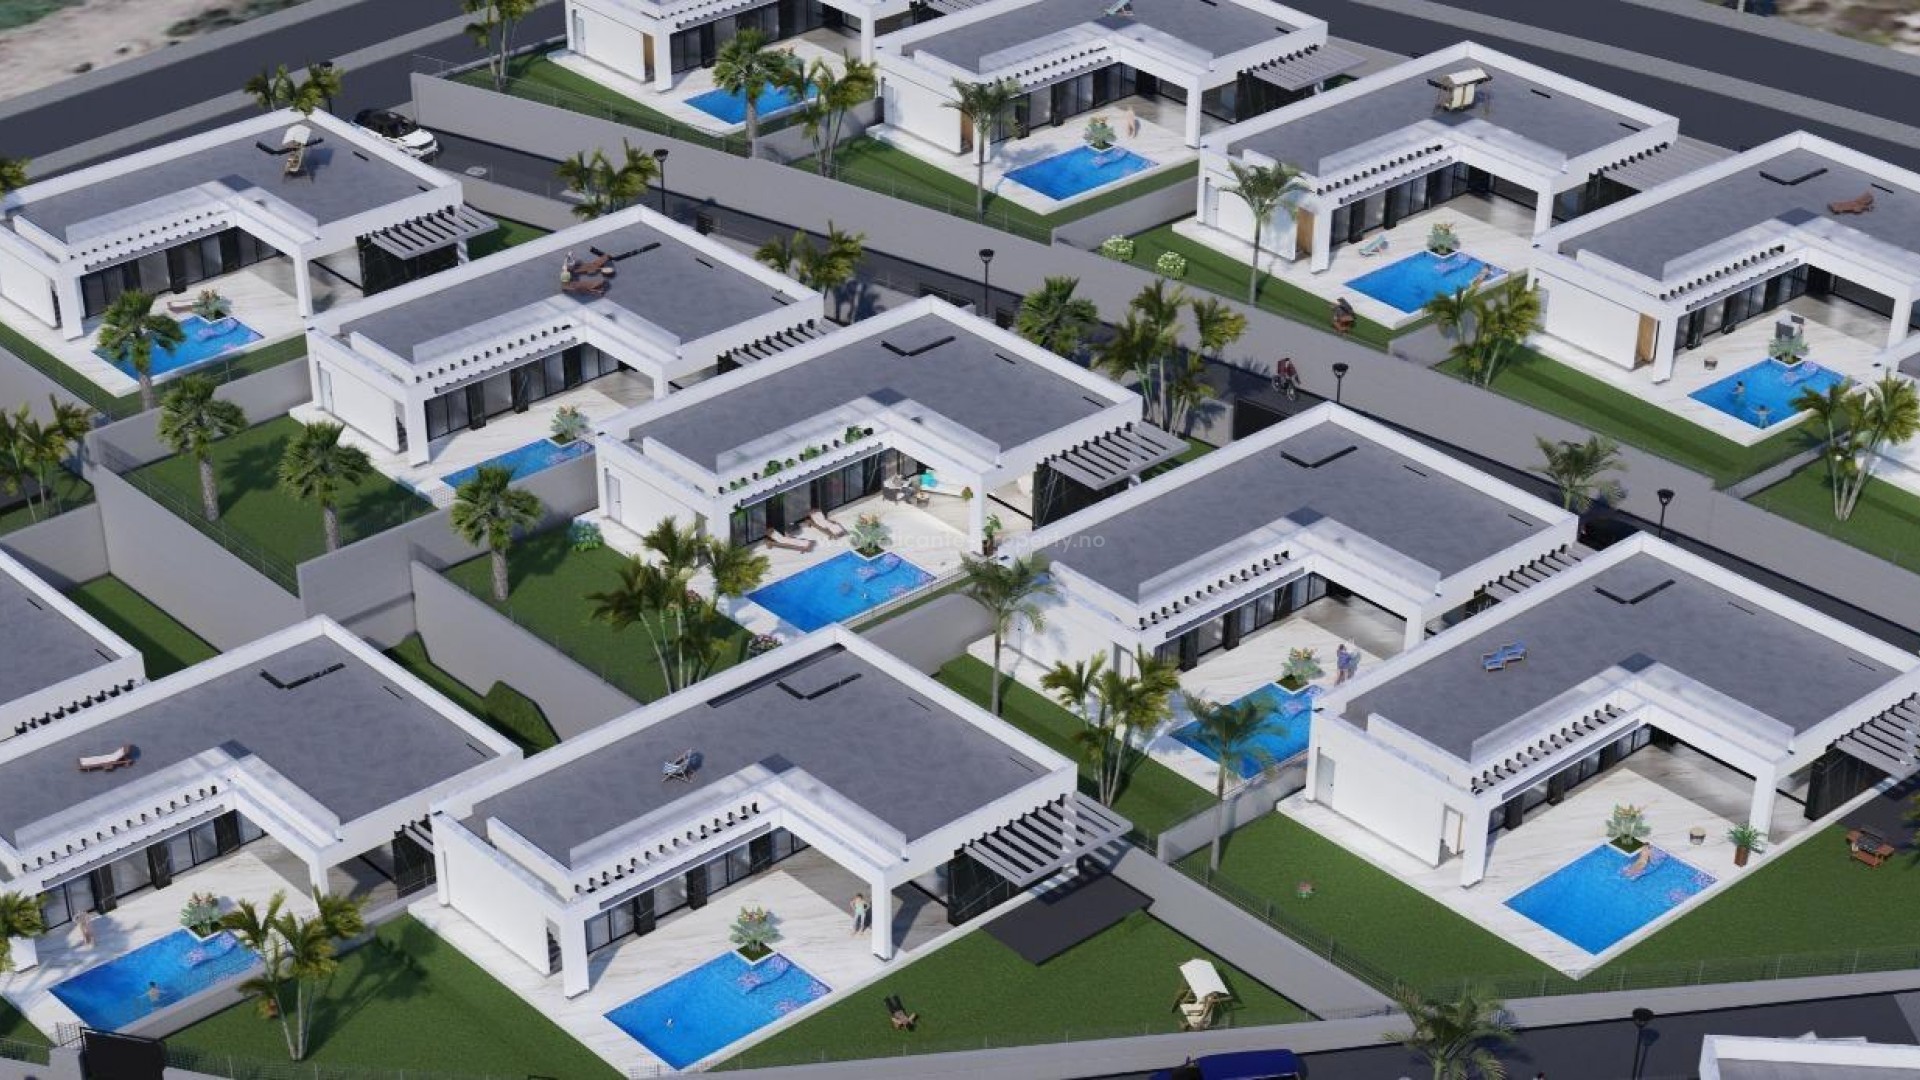 Nye hus/villaer i La Finca Golf i Algorfa, 3 soverom, 2 bad, hage med basseng, terrassa og solarium. Egen parkeringsplass